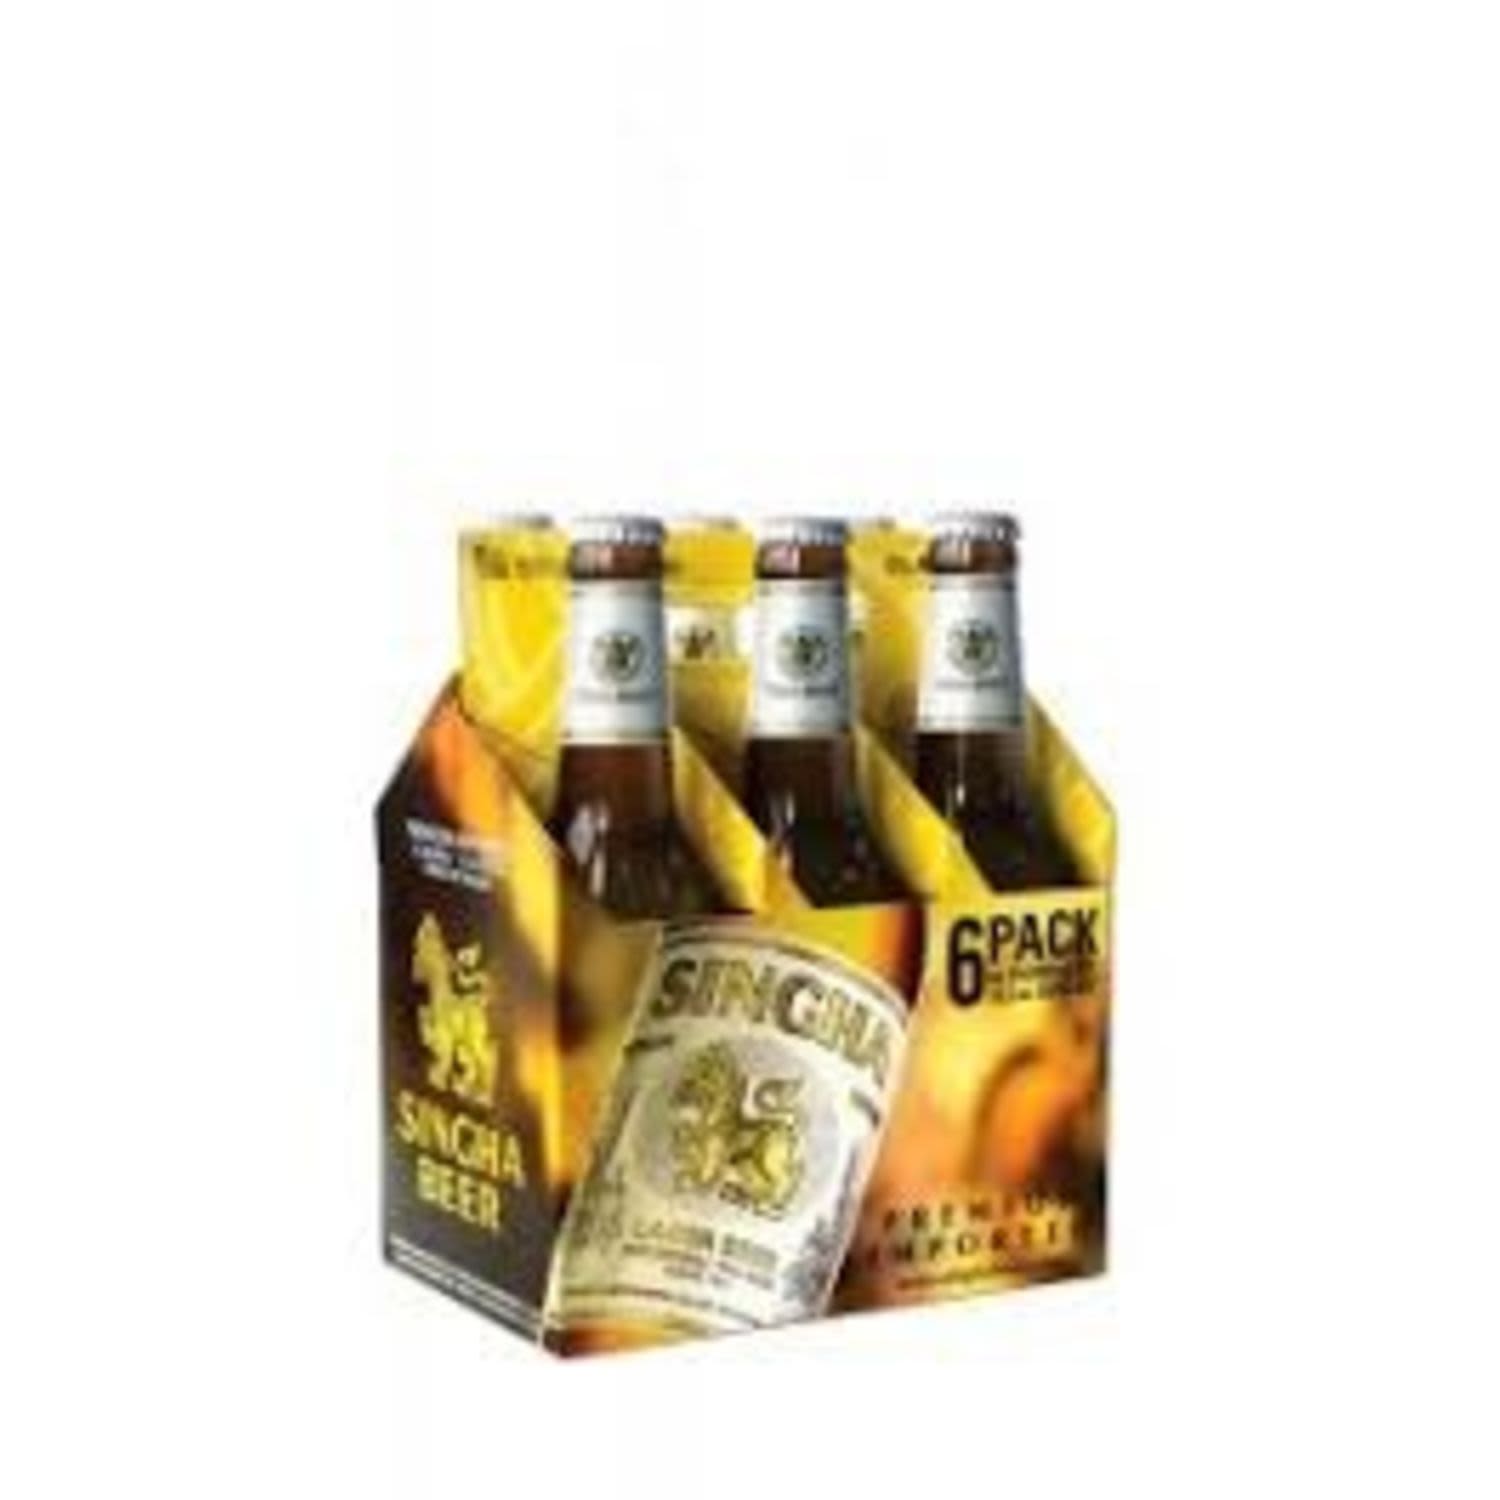 Singha Lager Bottle 330mL 6 Pack